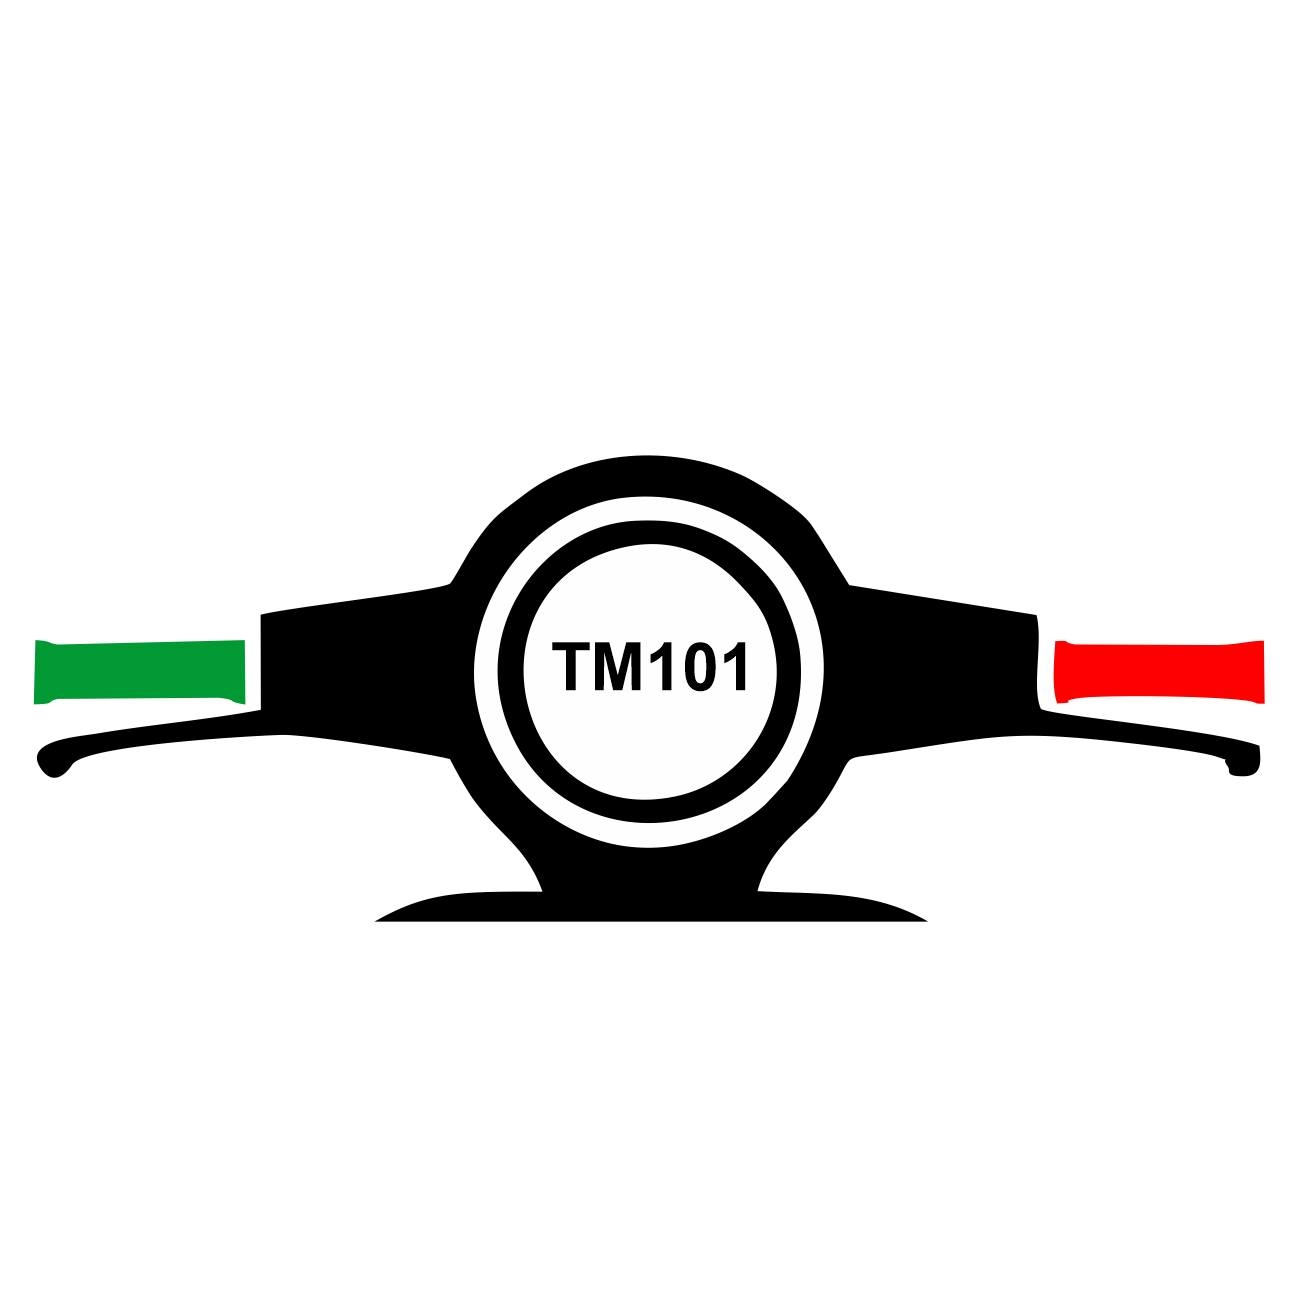 TM101 – Une application de réservation de taximoto pour faciliter les déplacements à Antananarivo